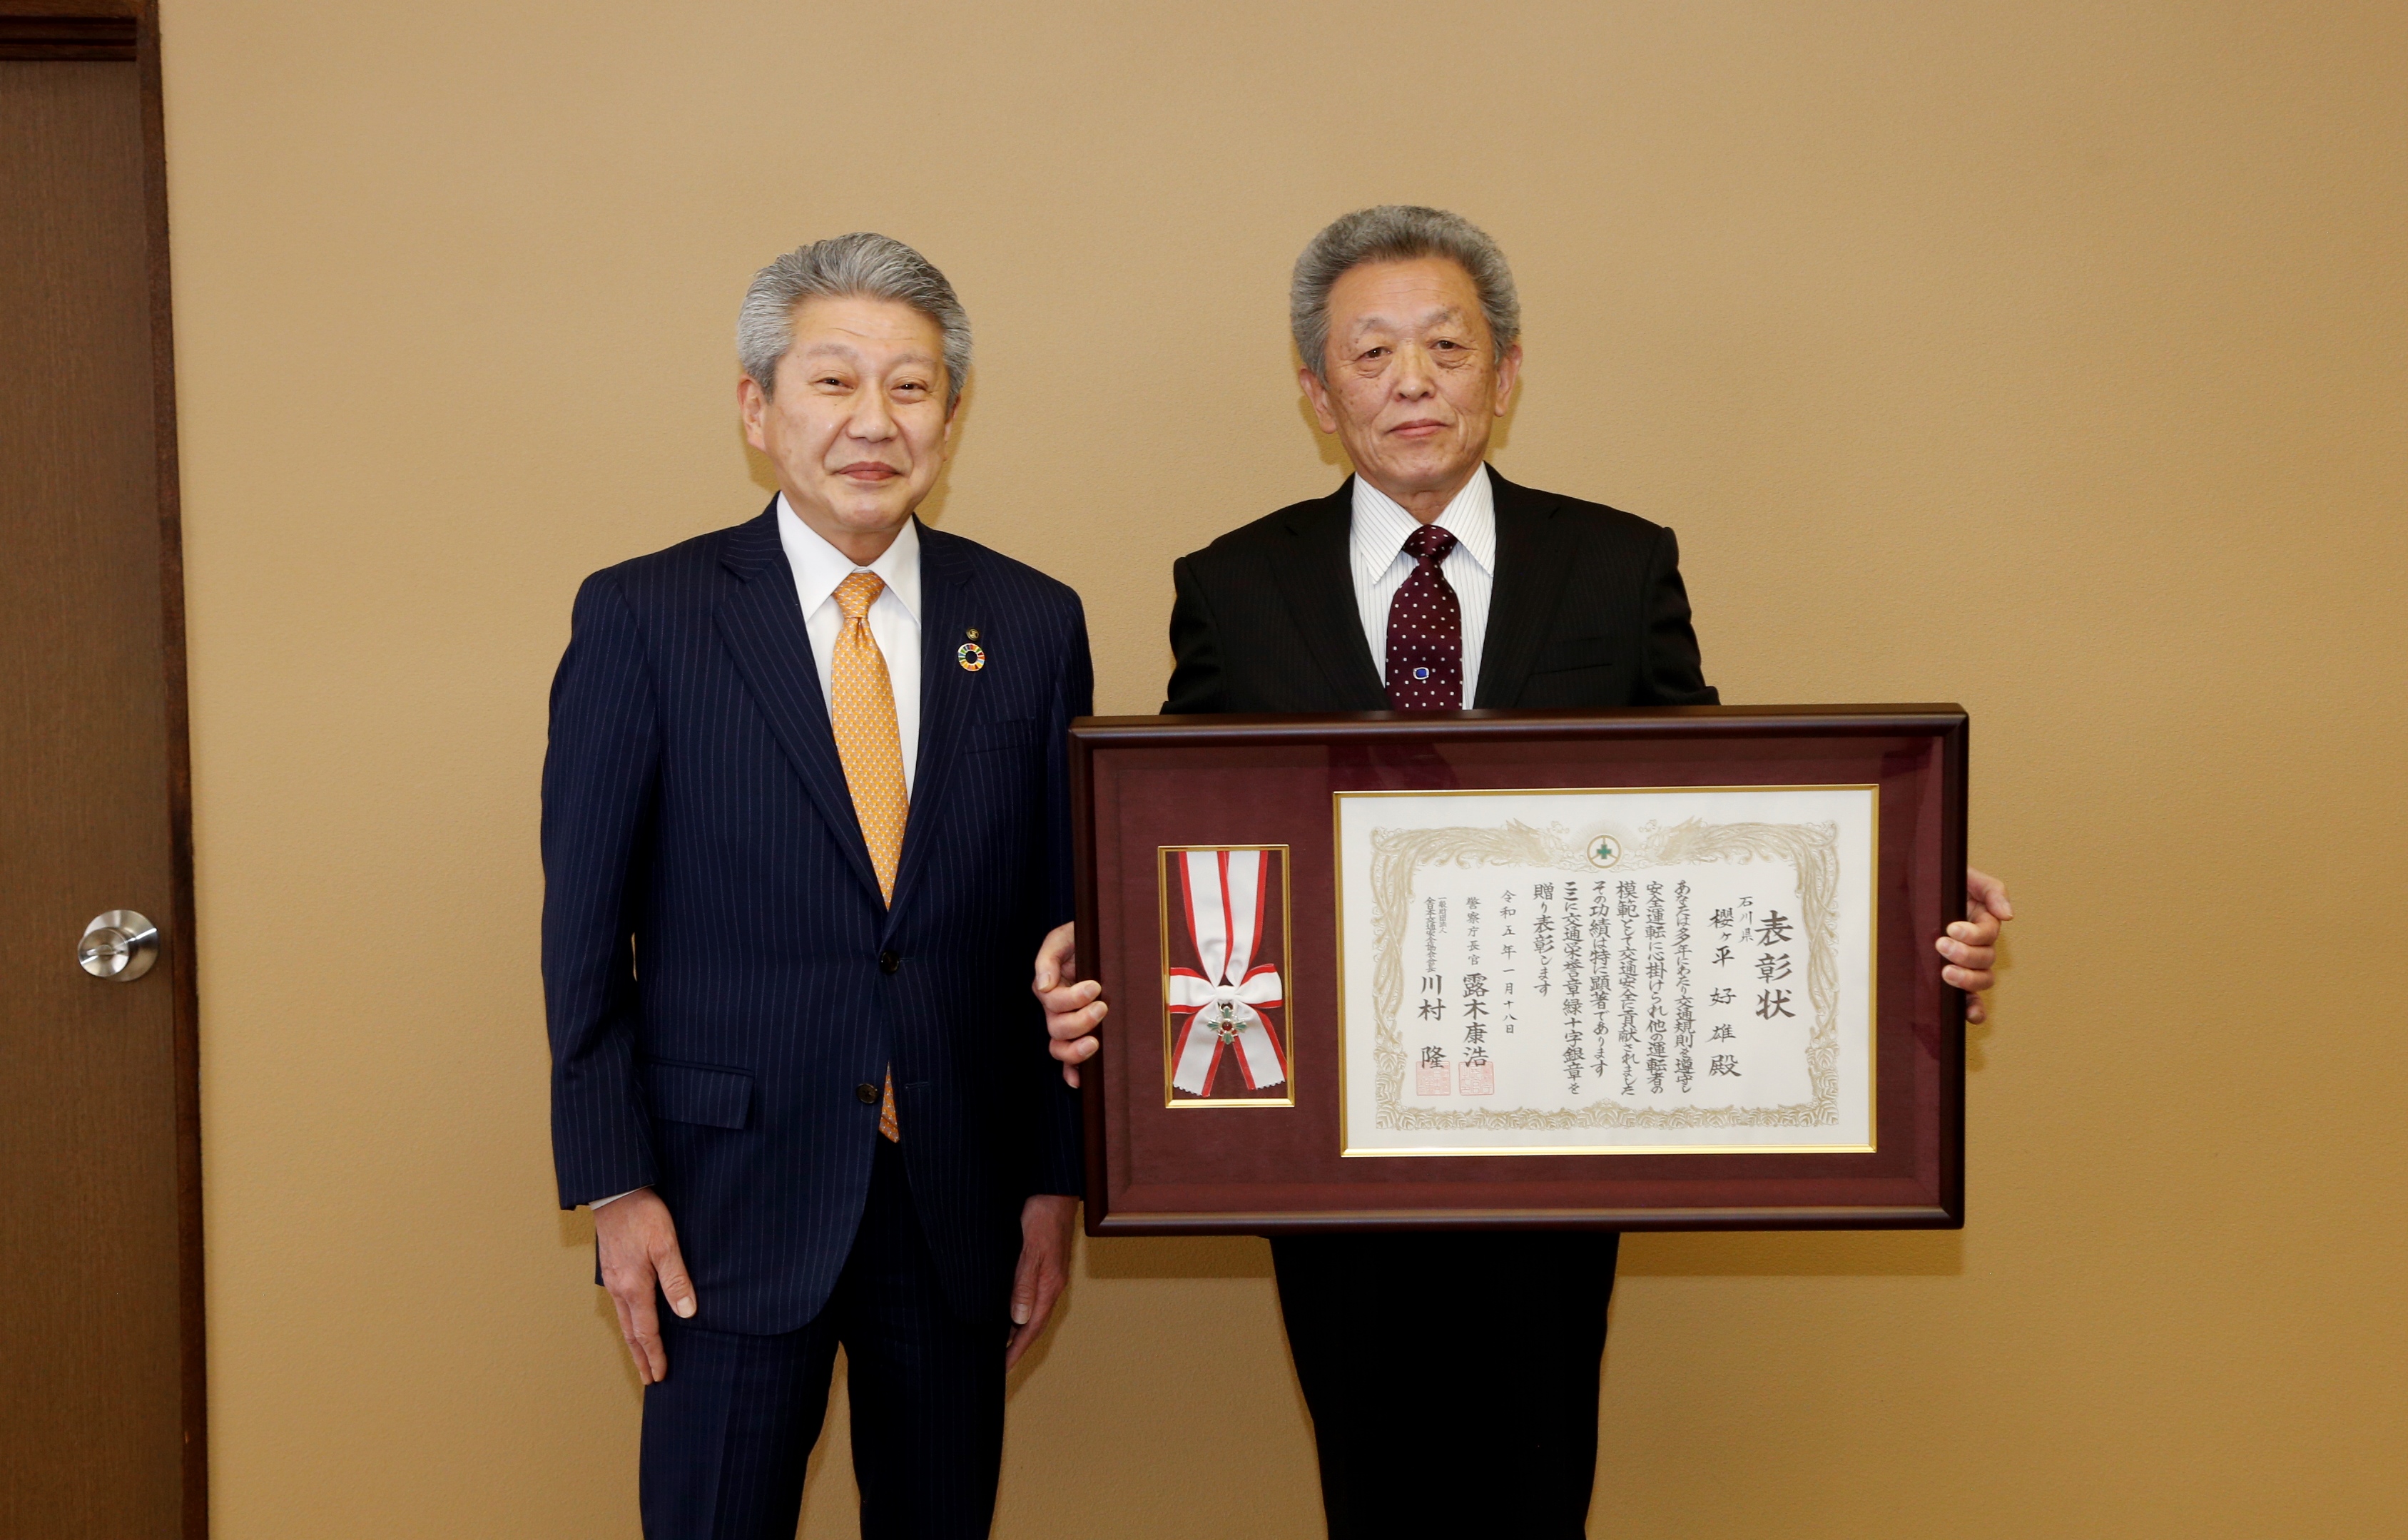 交通栄誉章「緑十字銀章」を受賞した櫻ヶ平さんの画像